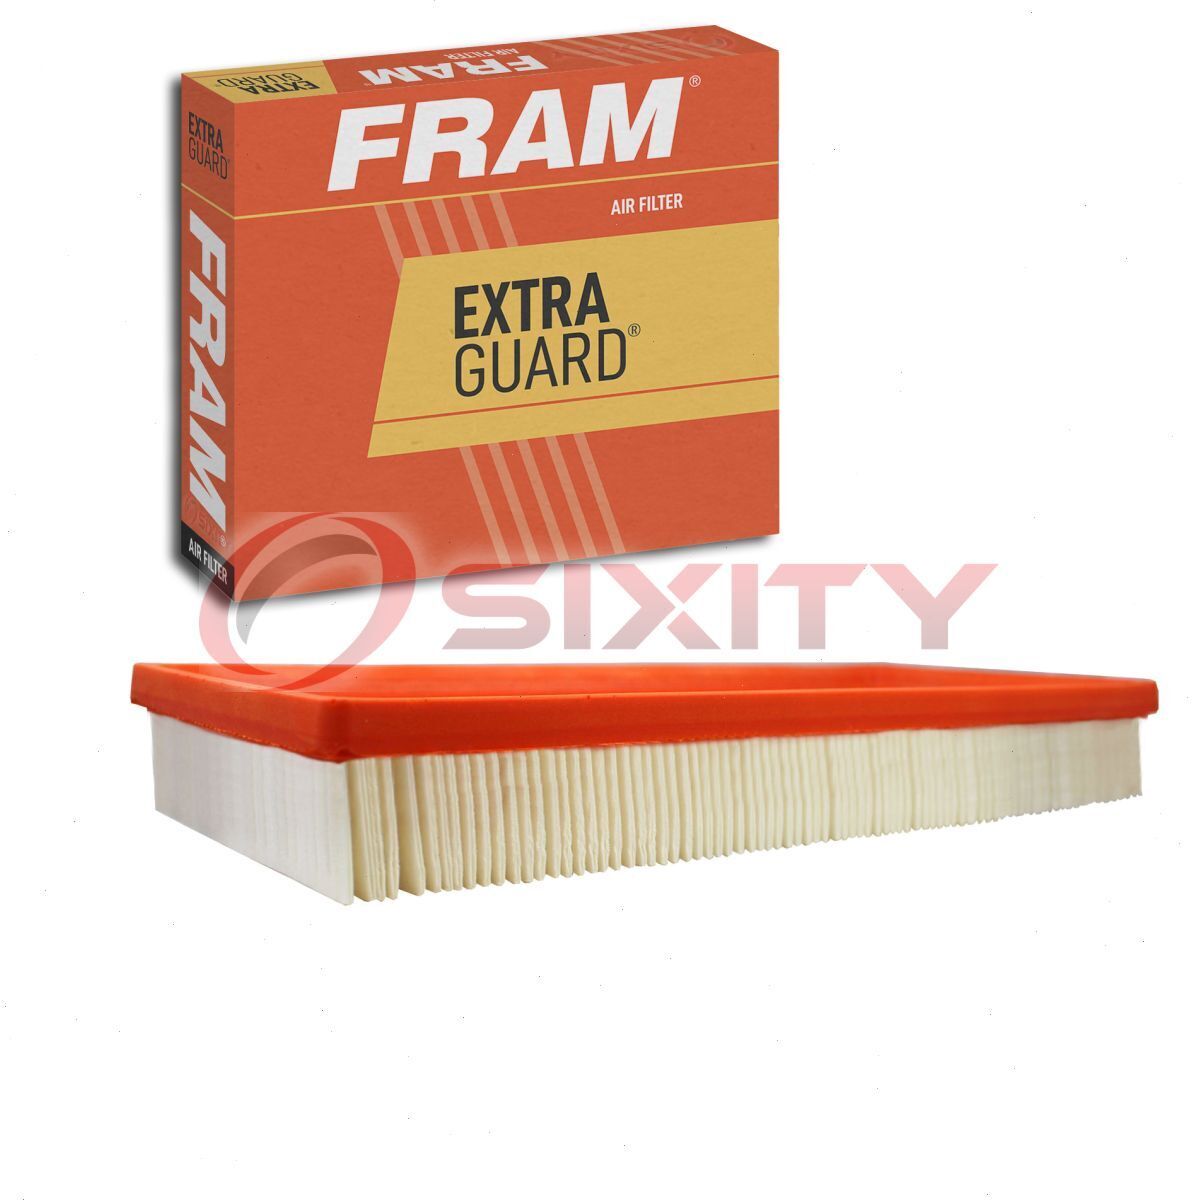 FRAM Extra Guard Air Filter for 1987-1996 Ford E-150 Econoline Club Wagon ug